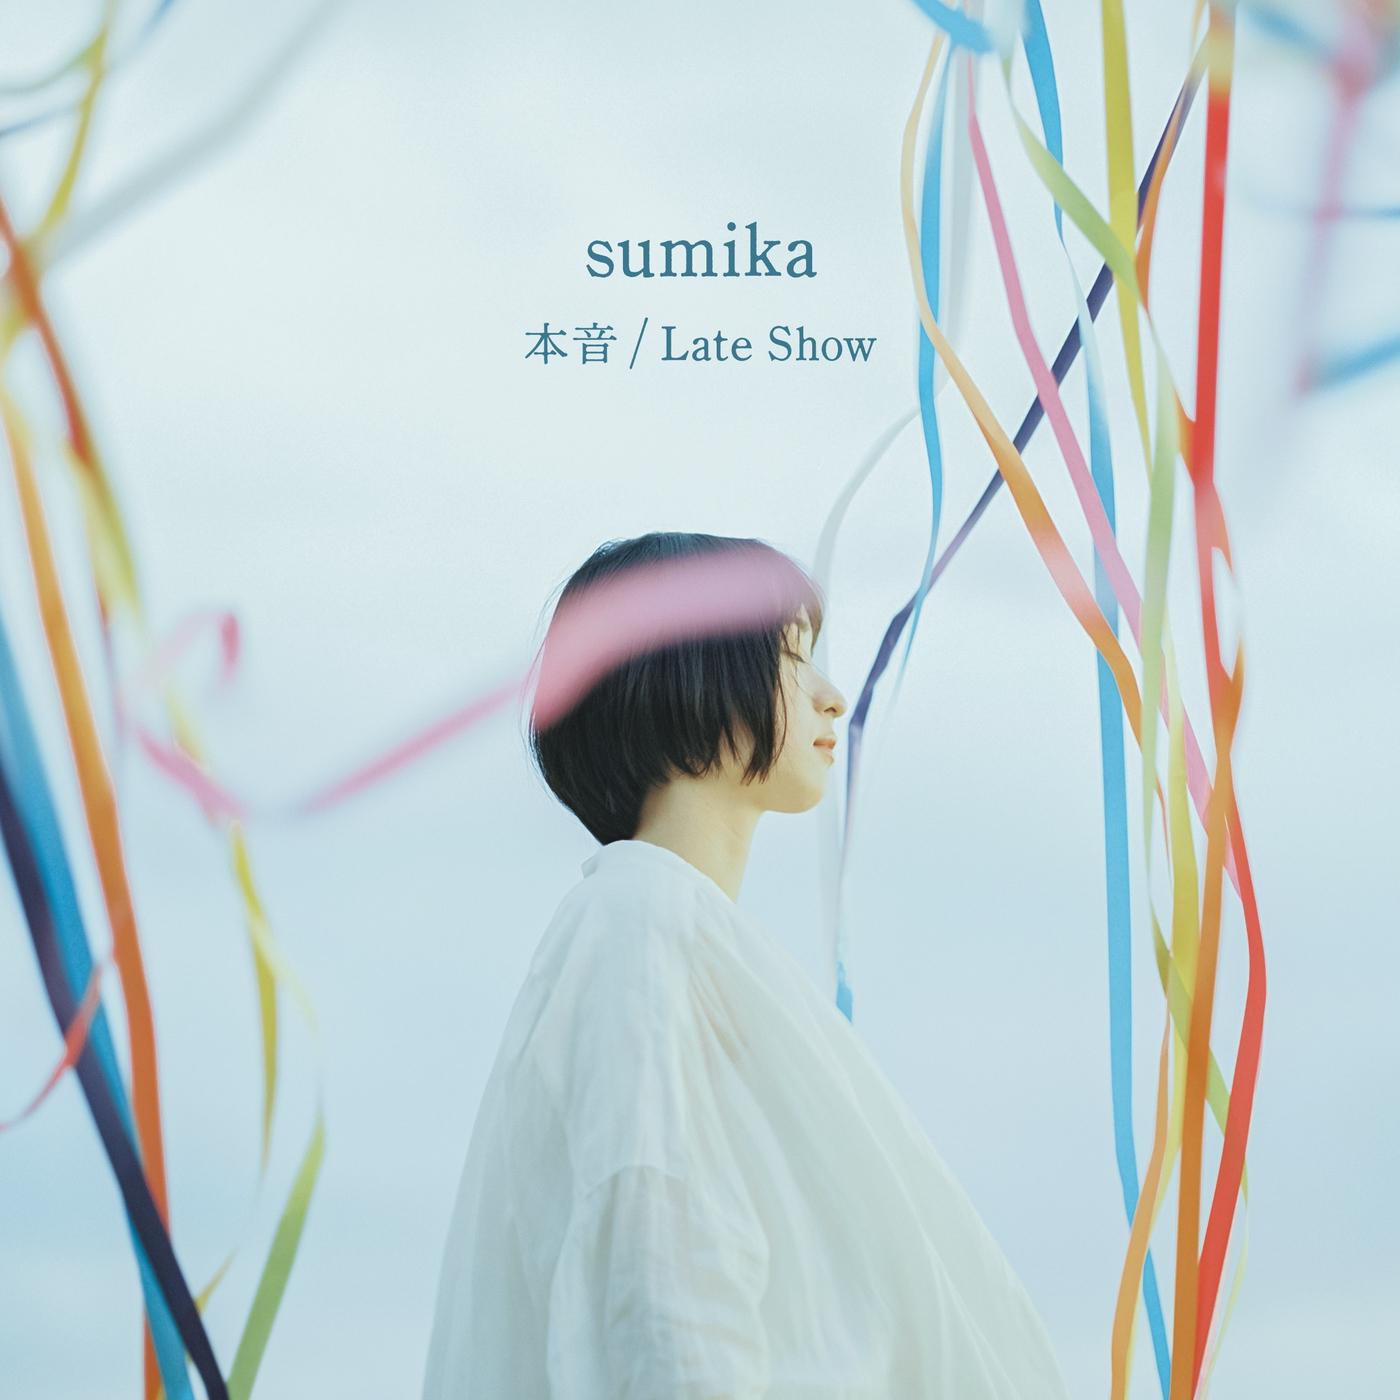 本音歌词 歌手sumika-专辑本音 / Late Show-单曲《本音》LRC歌词下载